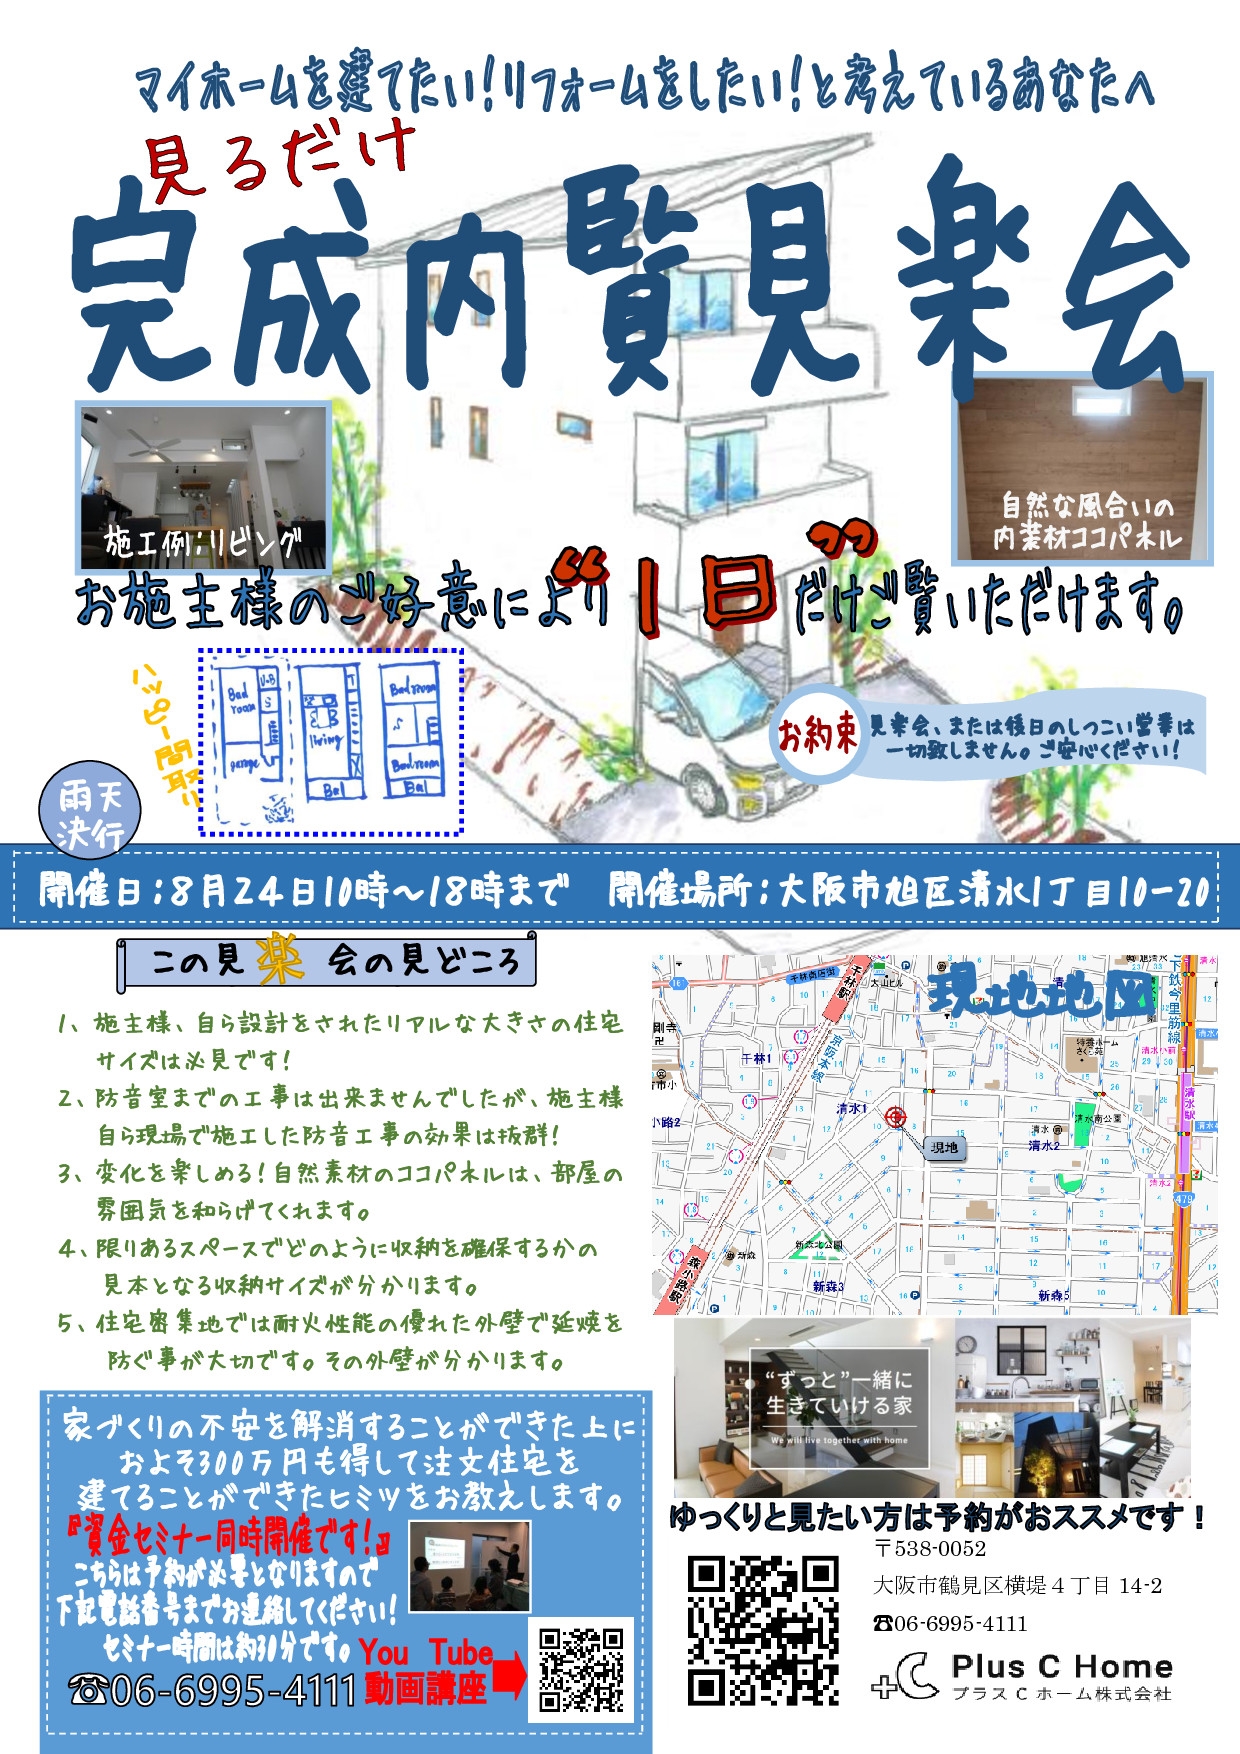 大阪注文住宅Plus C Homeの完成内覧見楽会